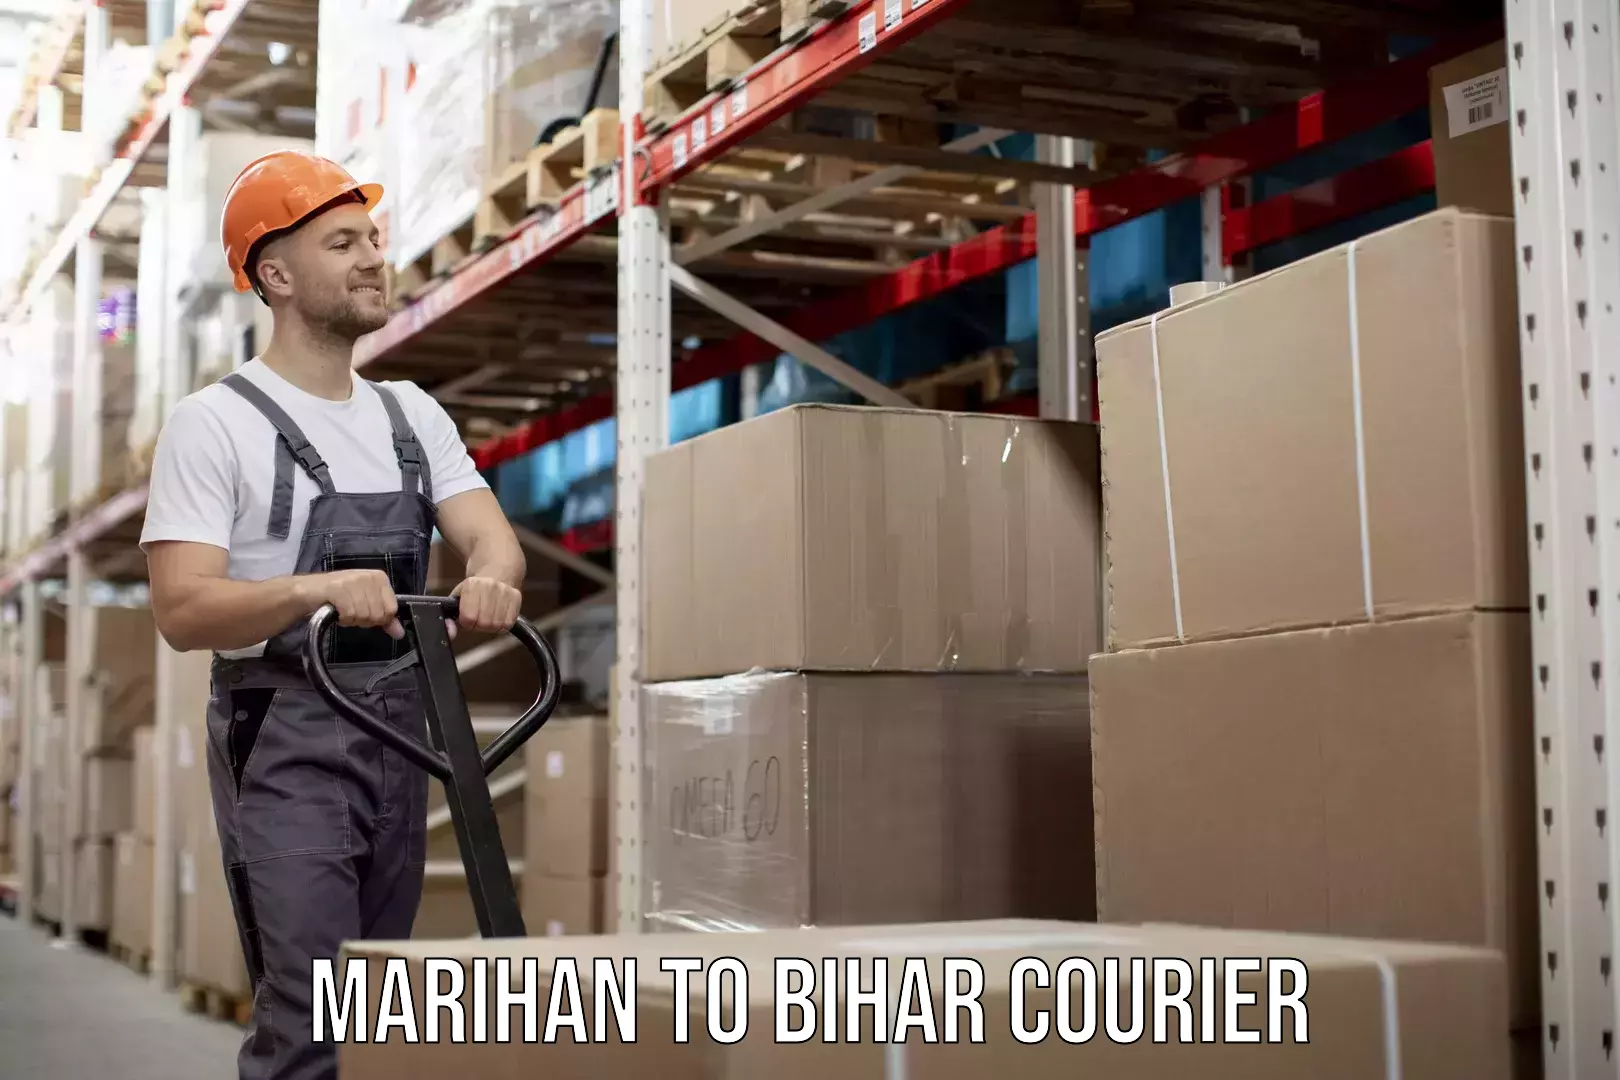 Furniture moving service Marihan to Bihar